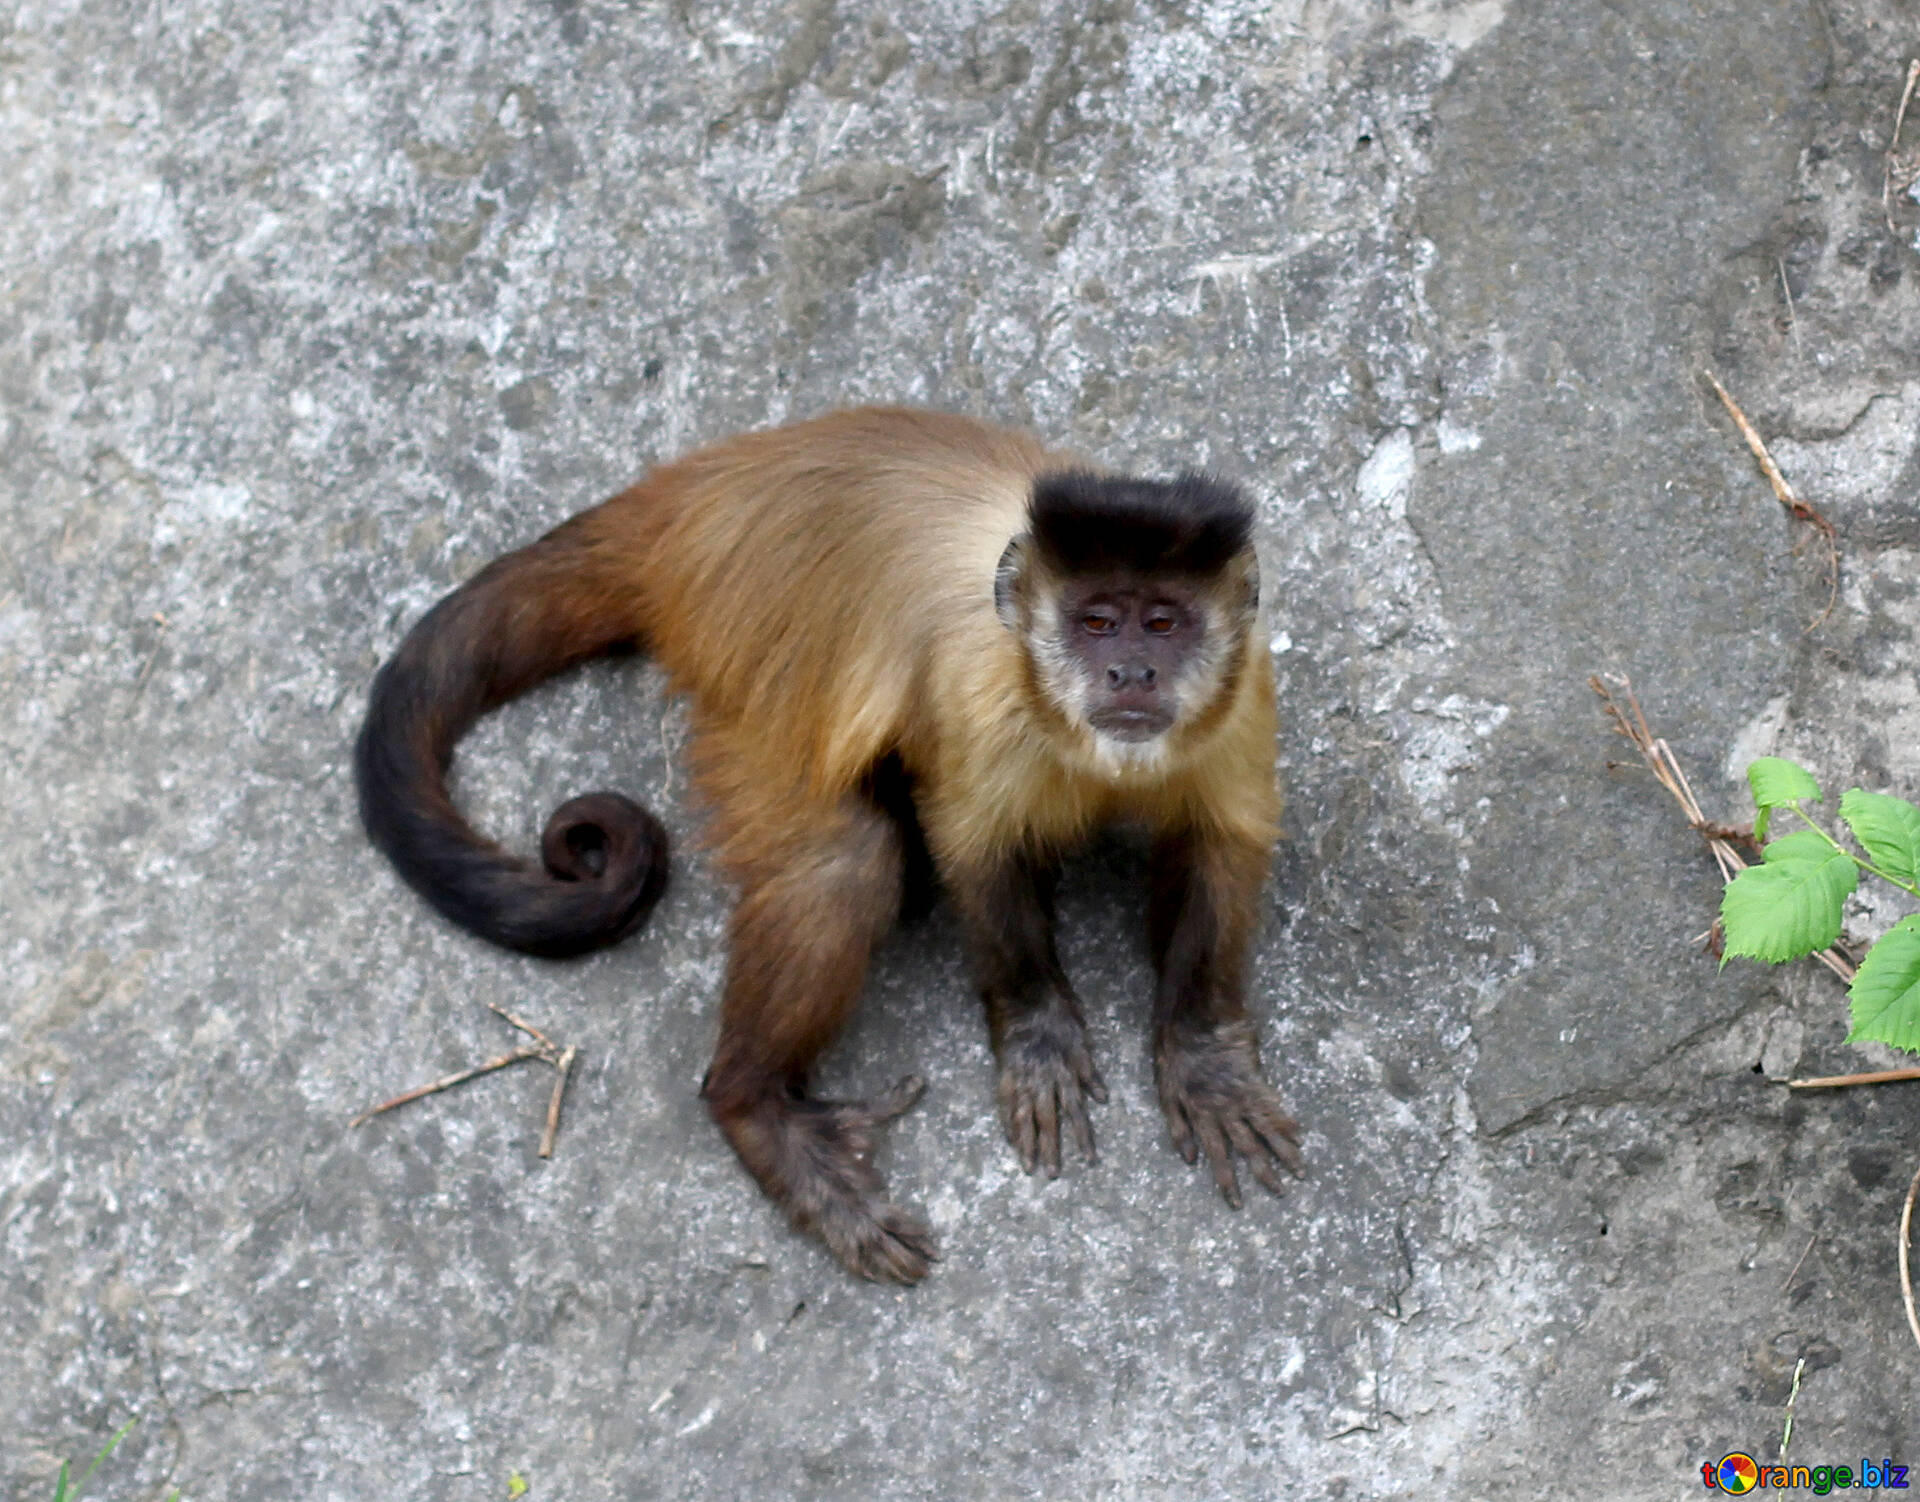 Monkey Image Capuchin Monkeys Image Animal № 44929. Torange.biz Free Pics On Cc By License